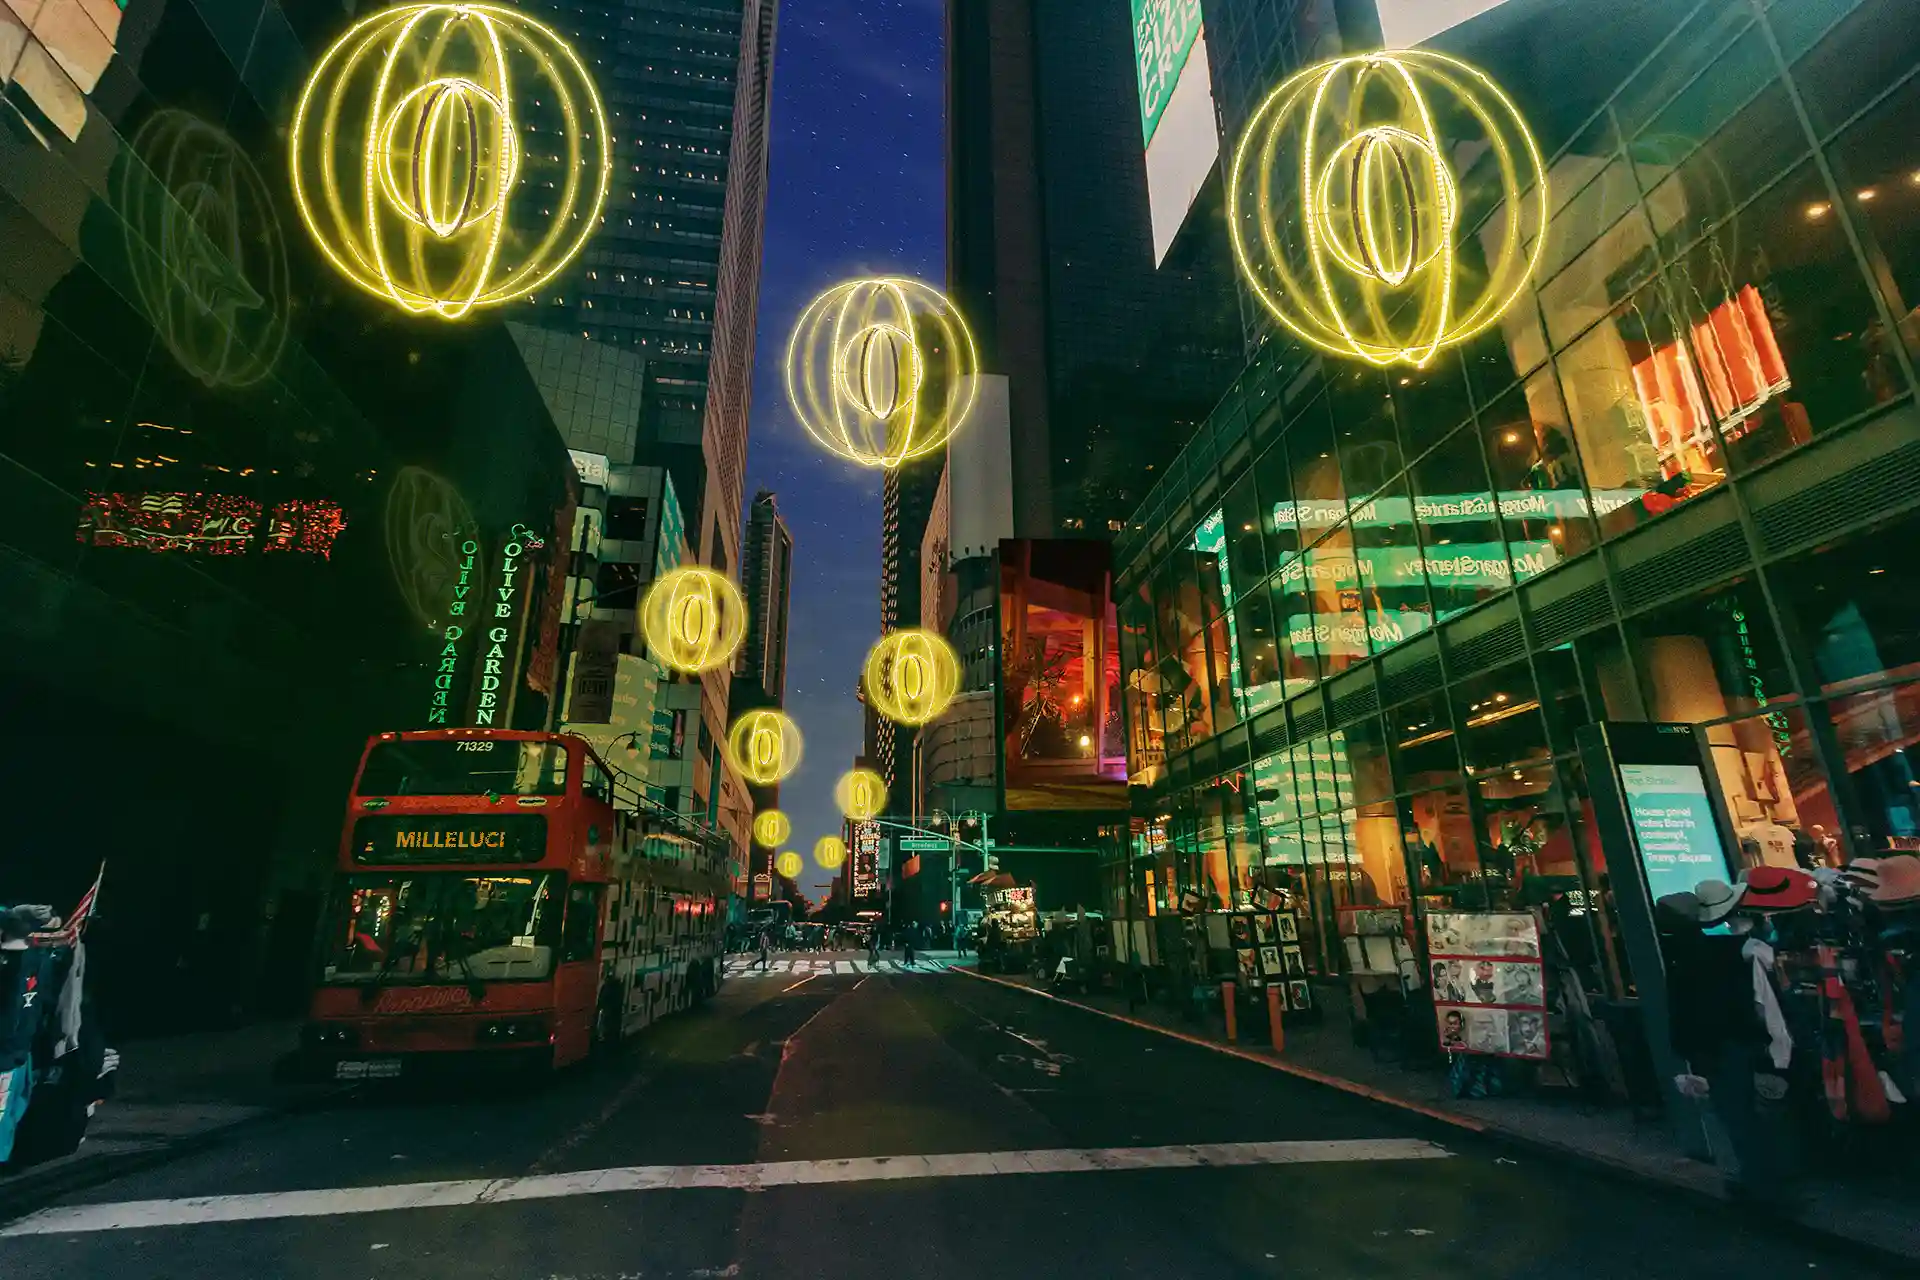 GloboSat - Immaginie di una centro urbano con luci sospese